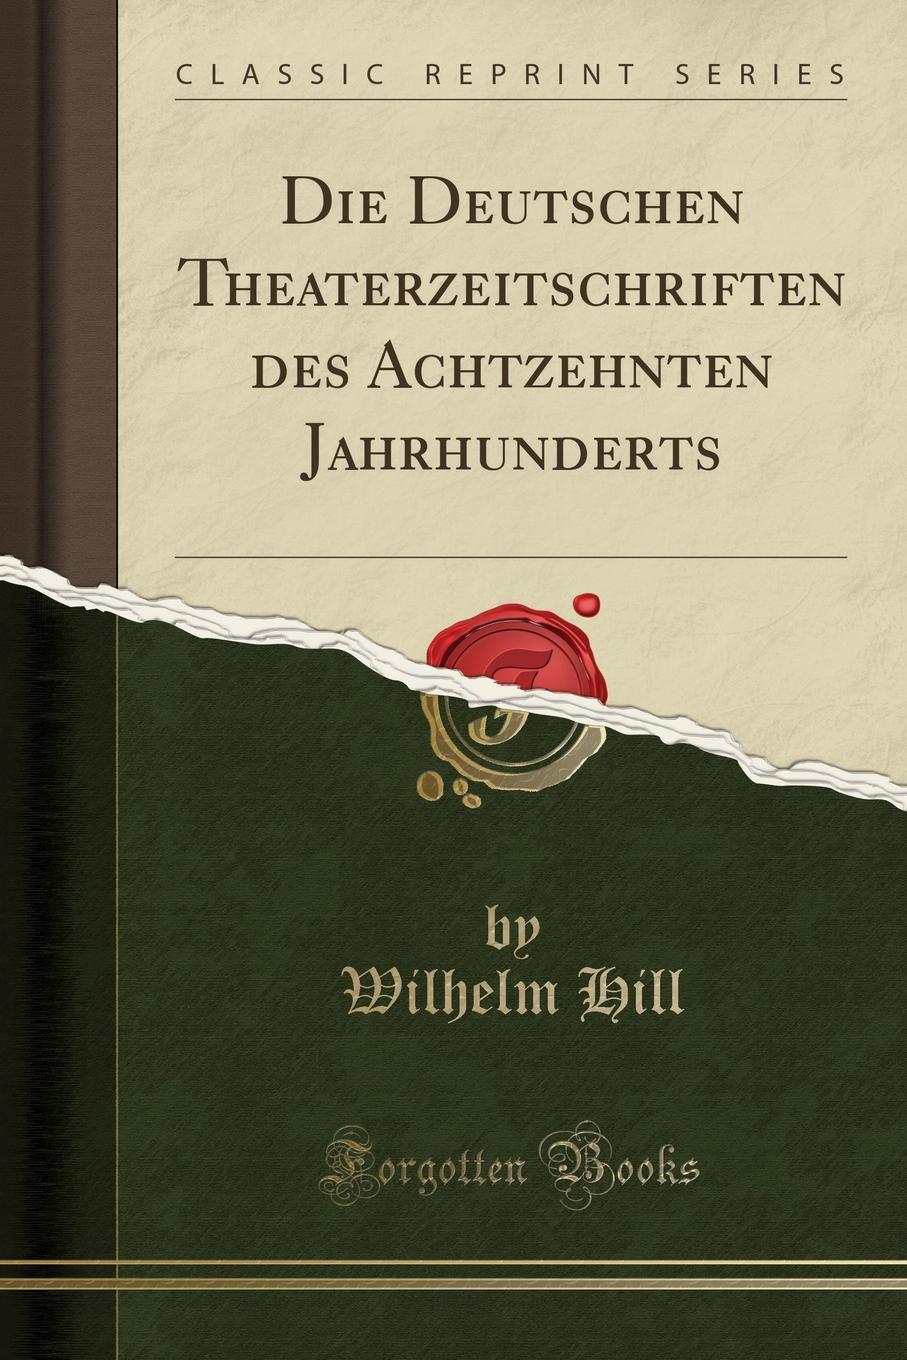 Die Deutschen Theaterzeitschriften des Achtzehnten Jahrhunderts (Classic Reprint)